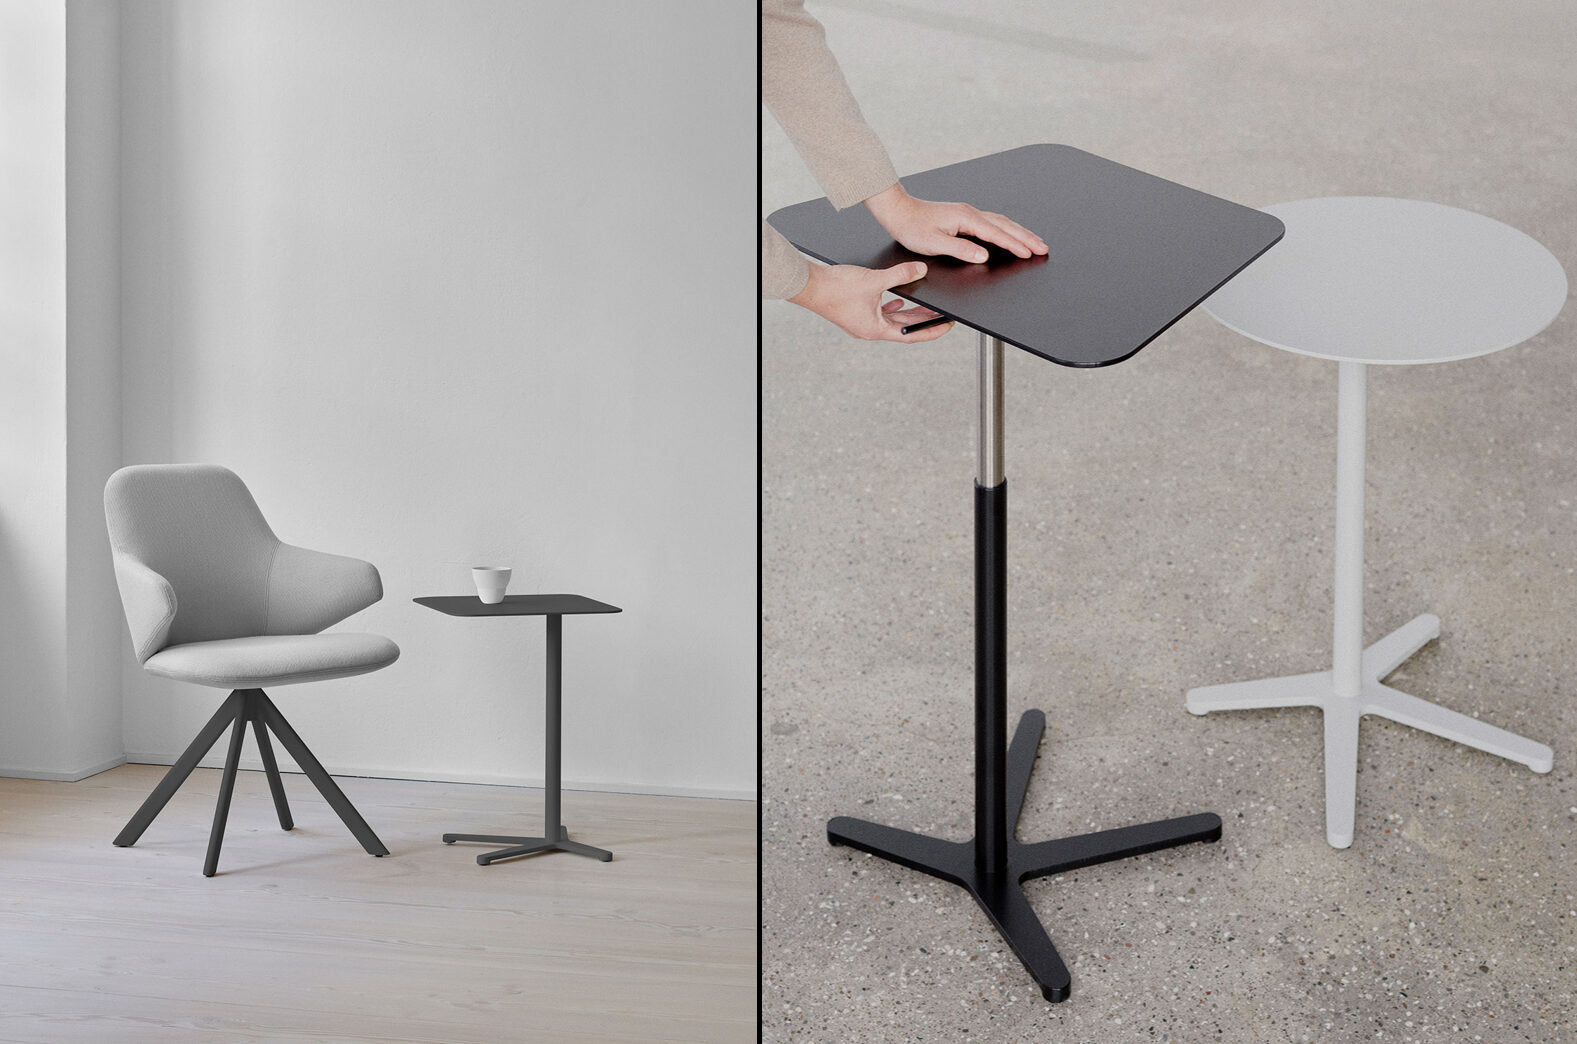 Zwei Fotos zeigen die XO Beistelltische. Links im Bild eine Variante in Schwarz mit rechteckiger Tischplatte zusammen mit einem Sessel. Rechts das Foto zeigt die Hände einer Person, die die Höhenverstellung des Beistelltisches betätigt.